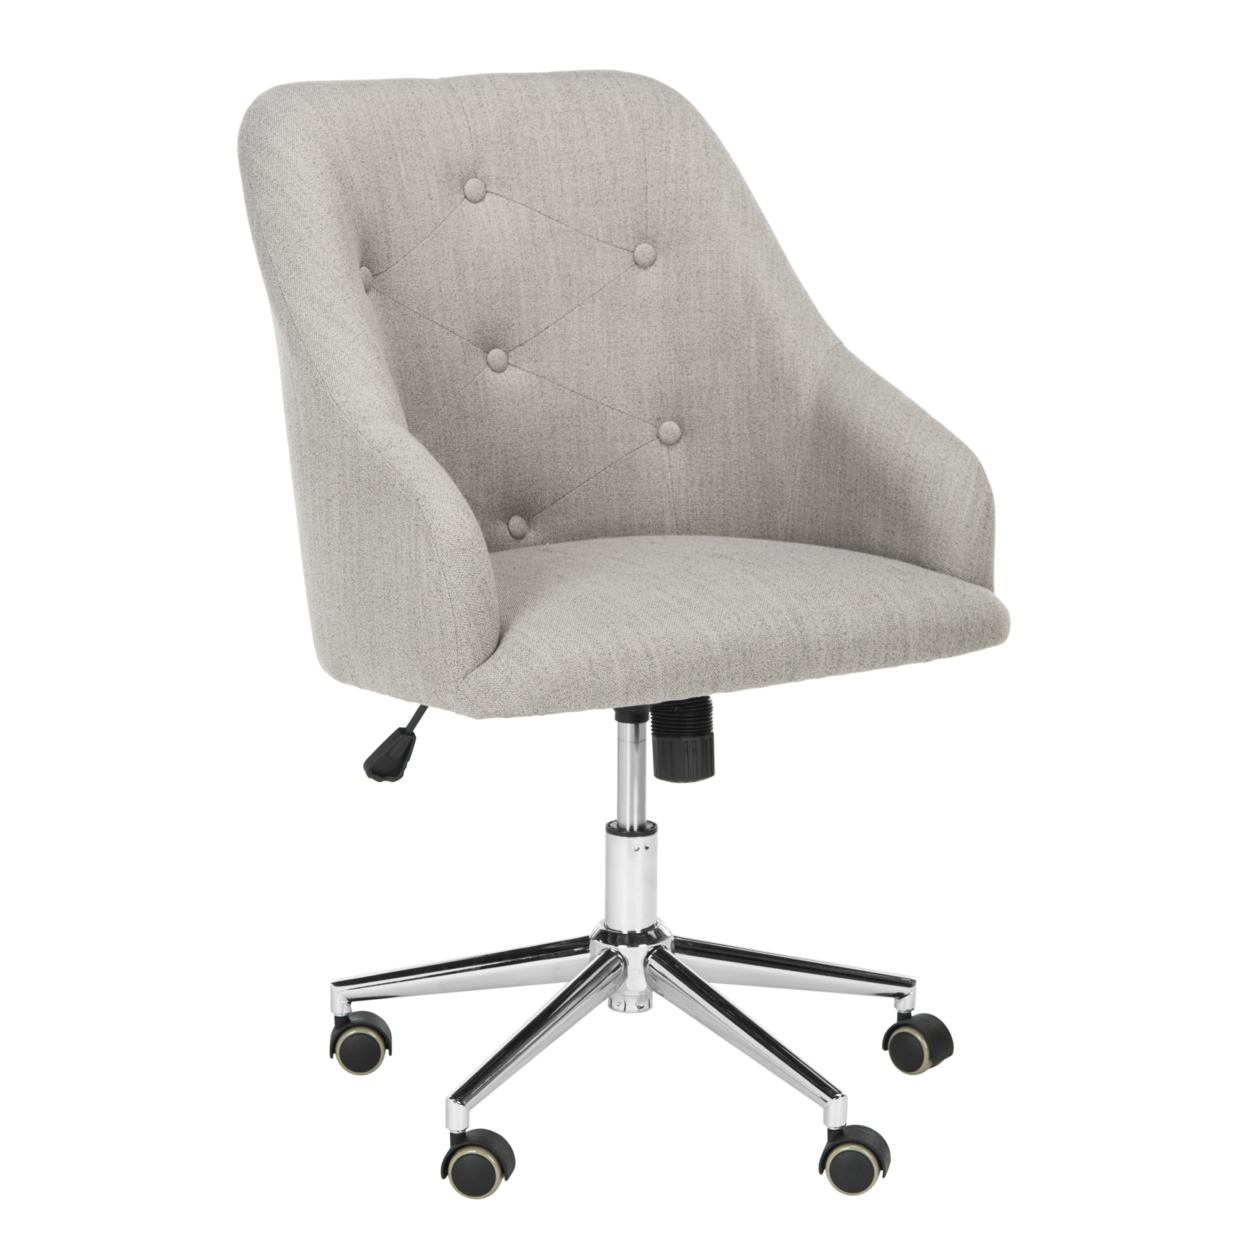 SAFAVIEH Evelynn Tufted Velvet Chrome Leg Swivel Office Chair Grey / Chrome